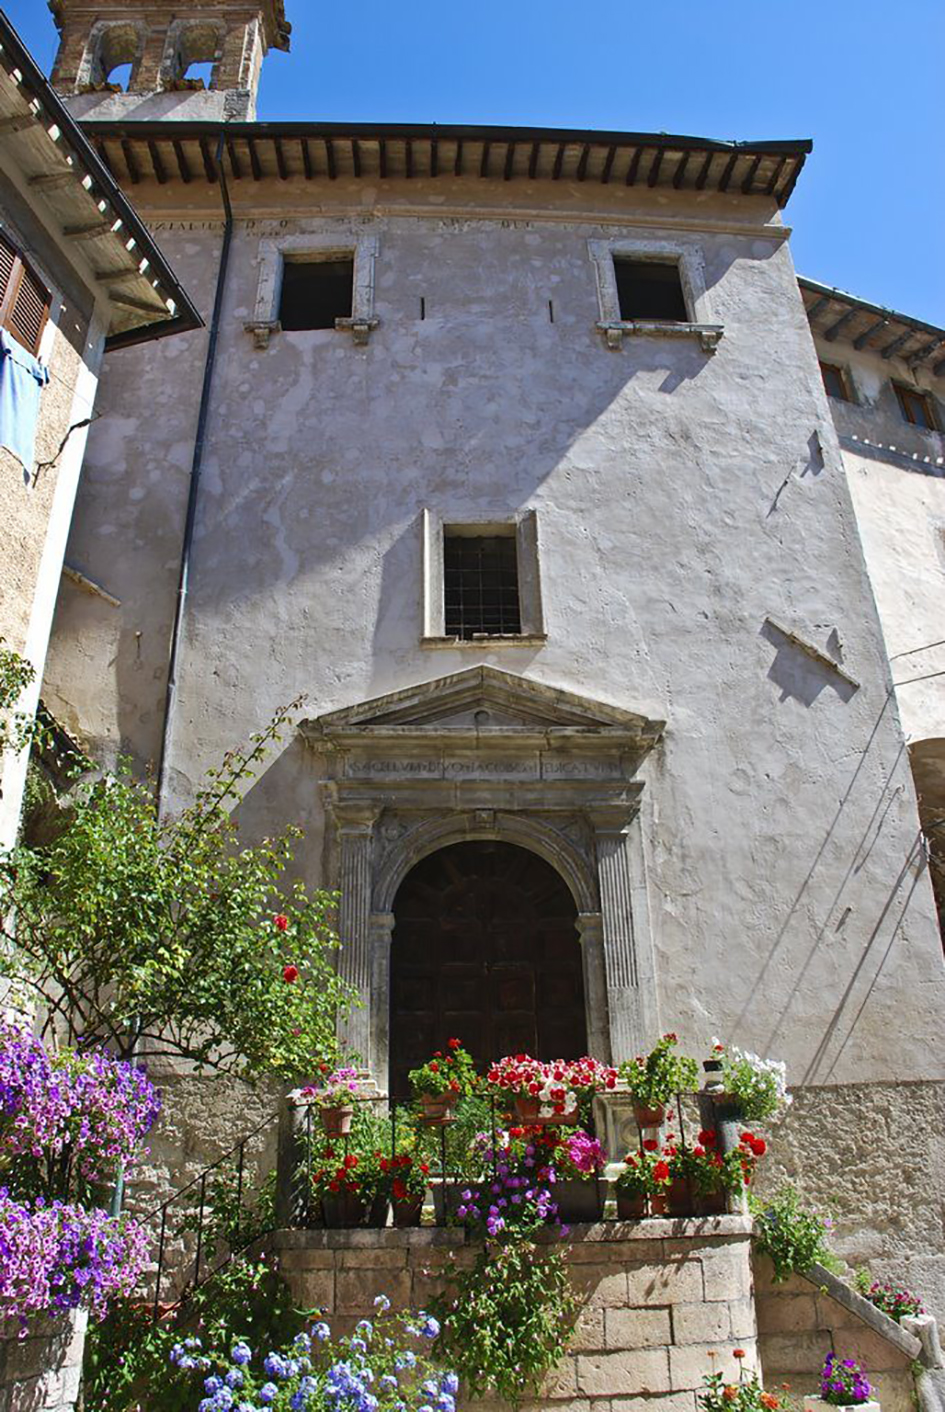 Convento di S. Giacomo (convento, agostiniano) - Visso (MC) 